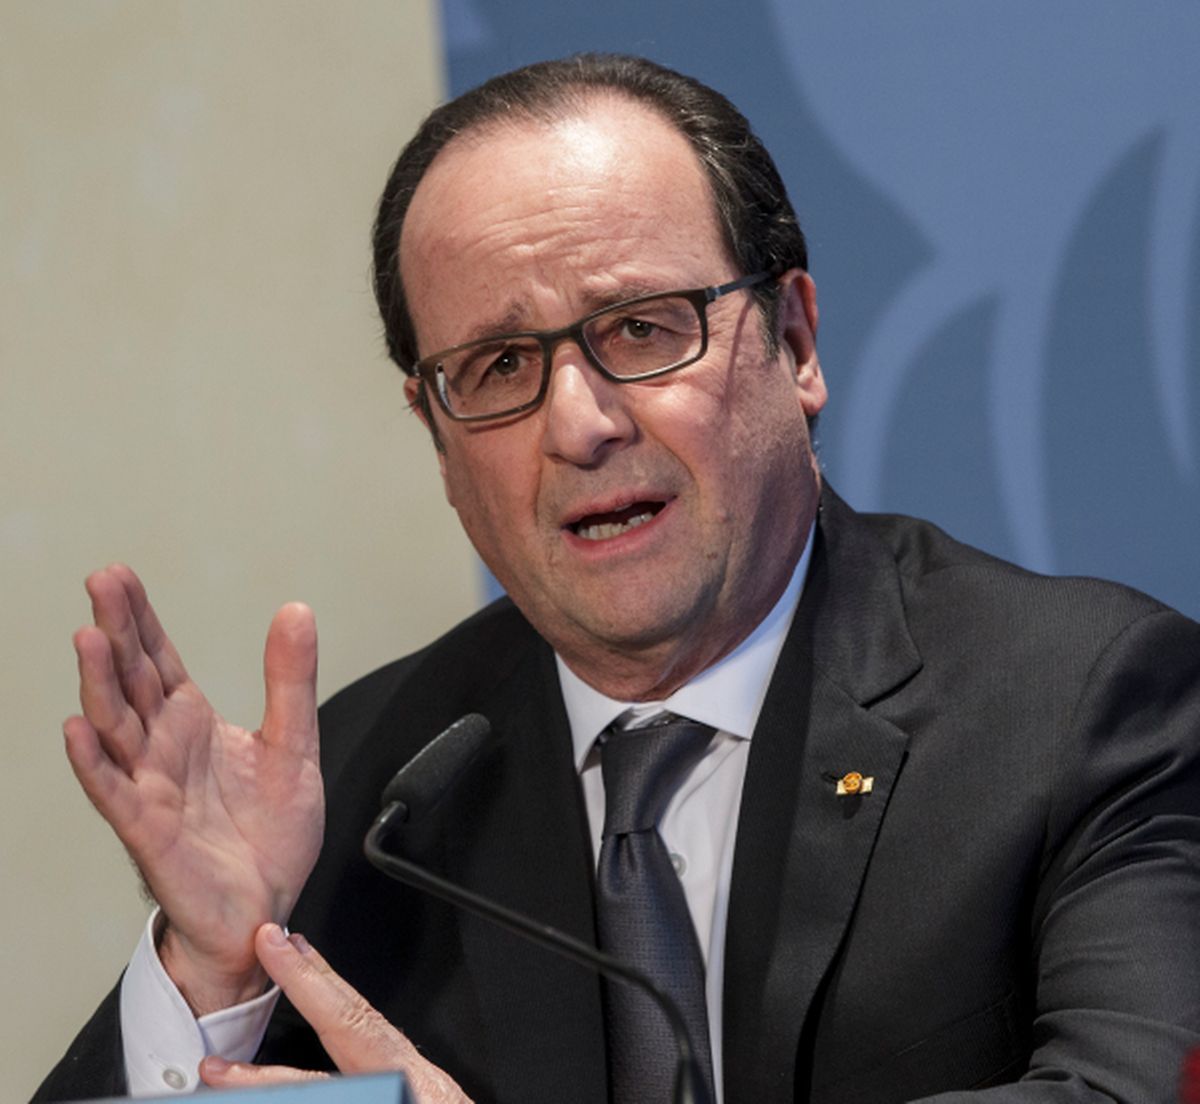 François Hollande: "De nombreux frontaliers qui viennent chaque jour de la France vers le Luxembourg pour occuper des emplois de haut niveau".